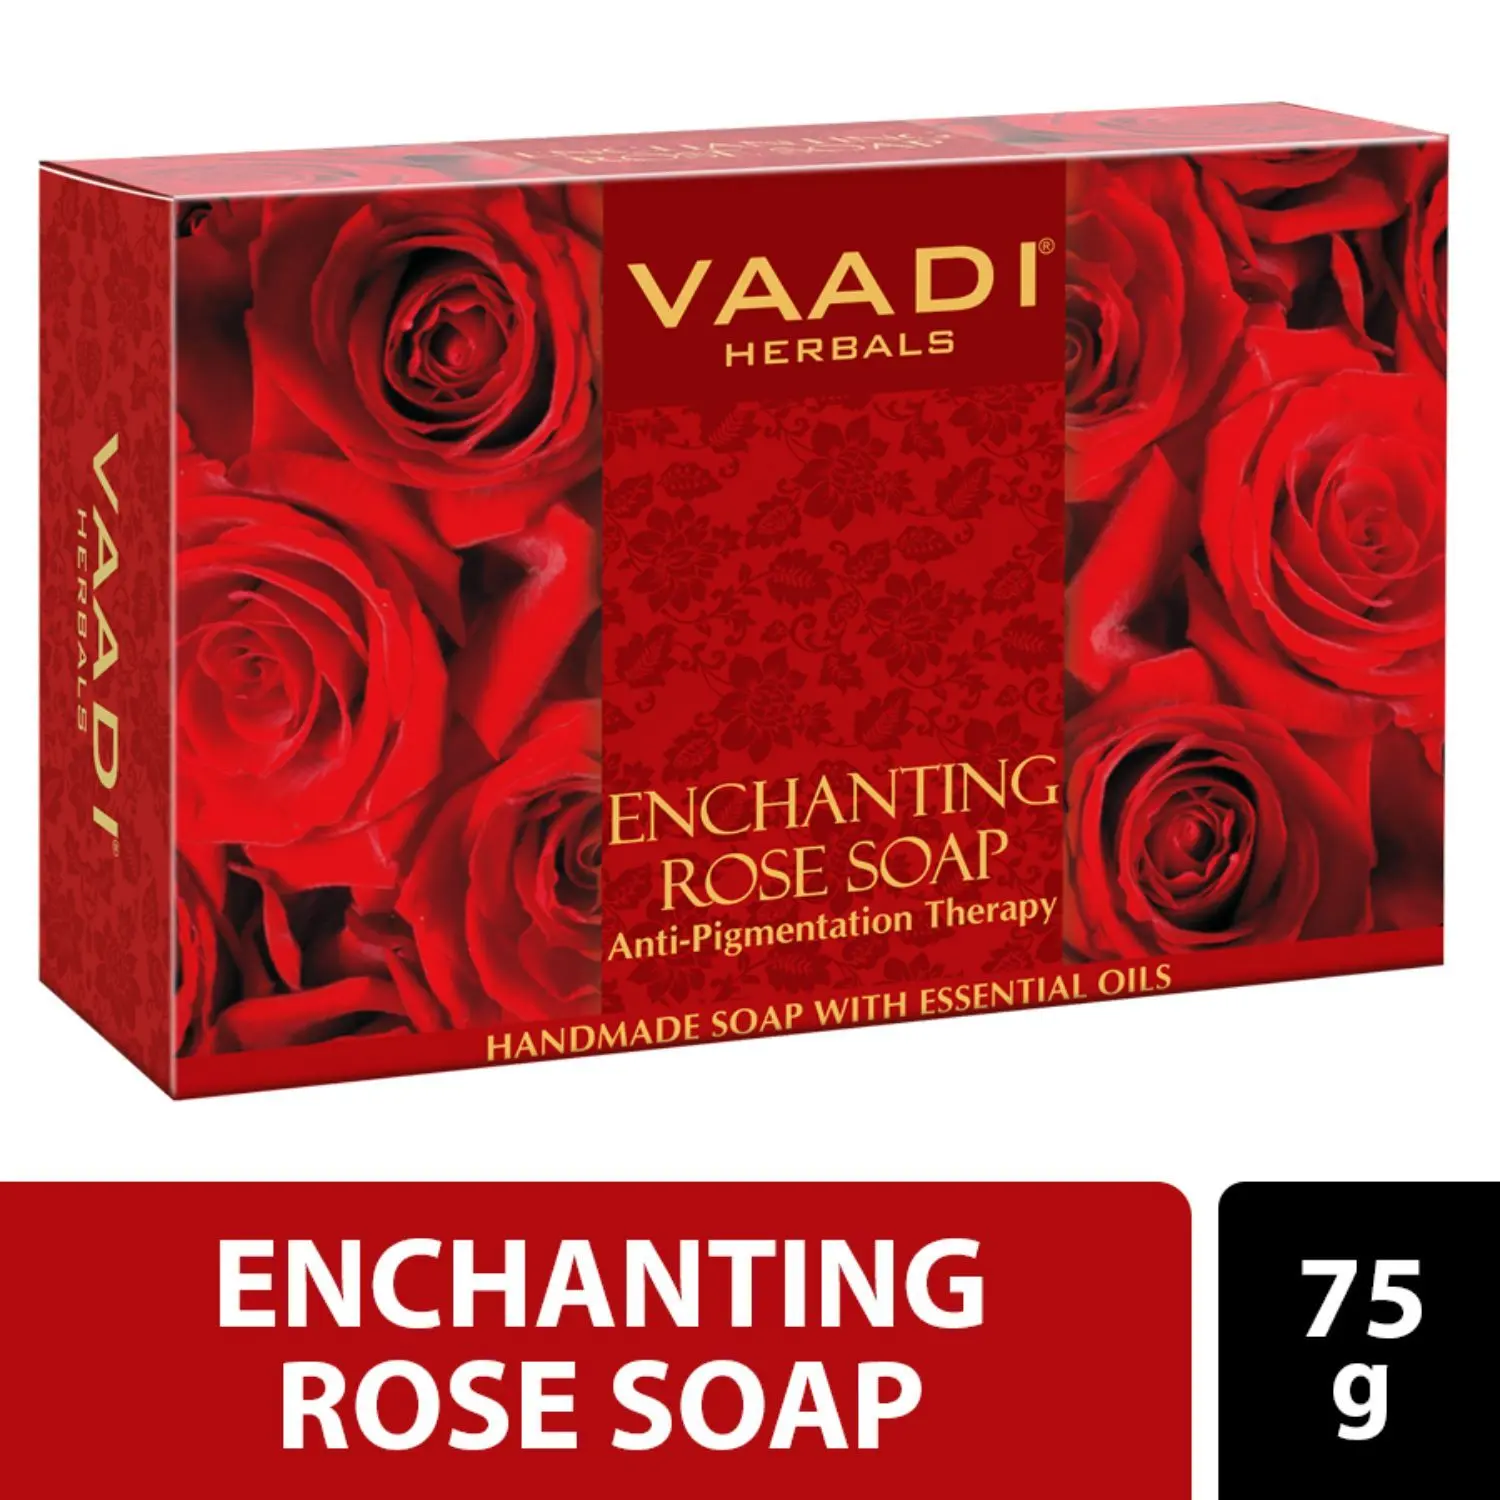 Vaadi Herbals Enchanting Rose Soap